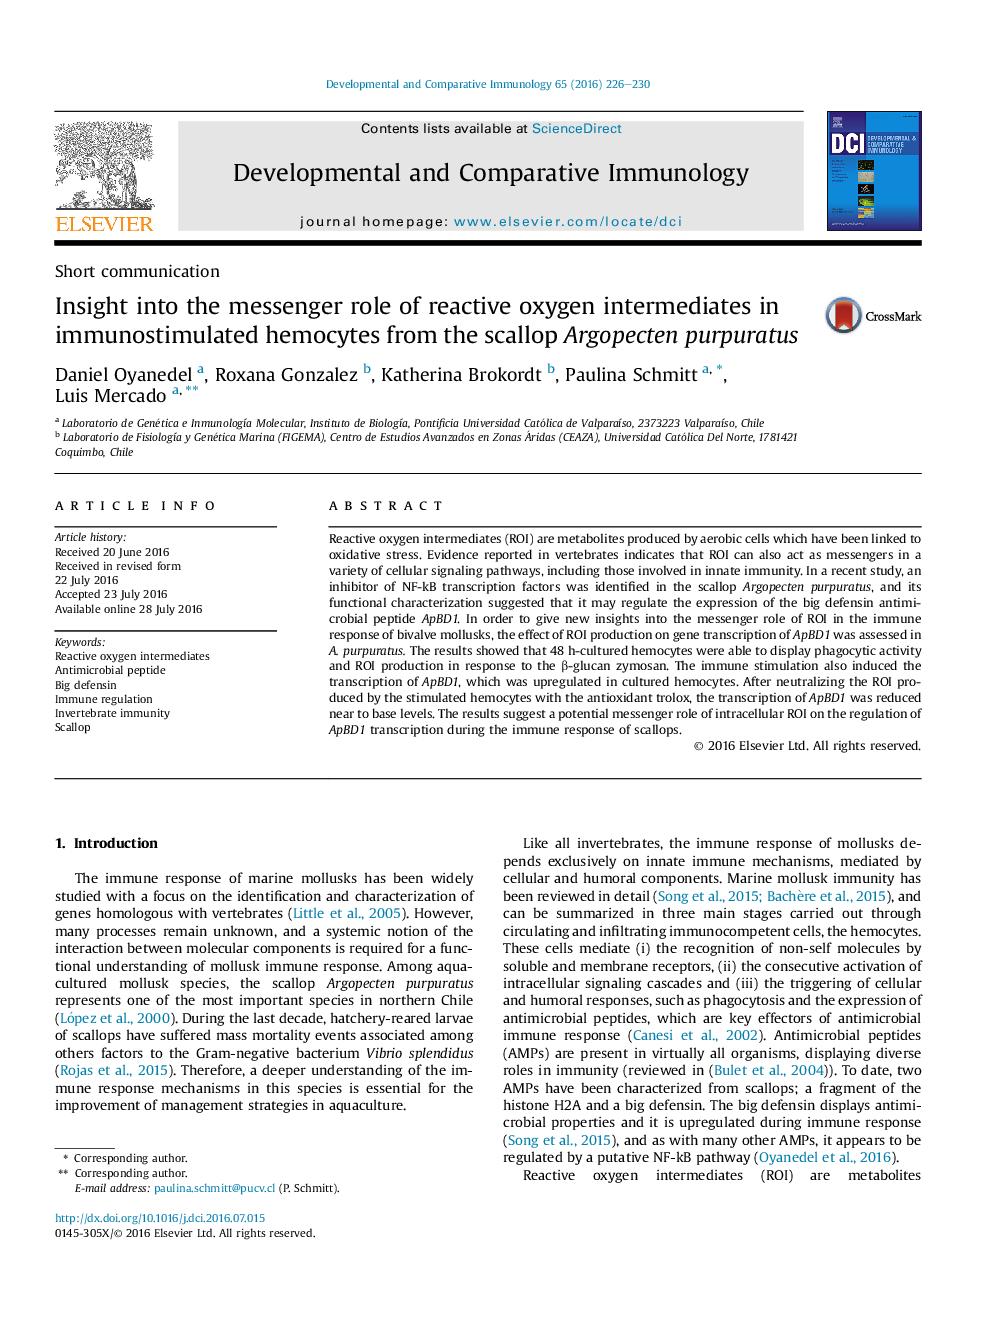 نگاهی به نقش پیام رسان واسطه های اکسیژن واکنشی در hemocytes immunostimulated از Argopecten purpuratus گوش ماهی 